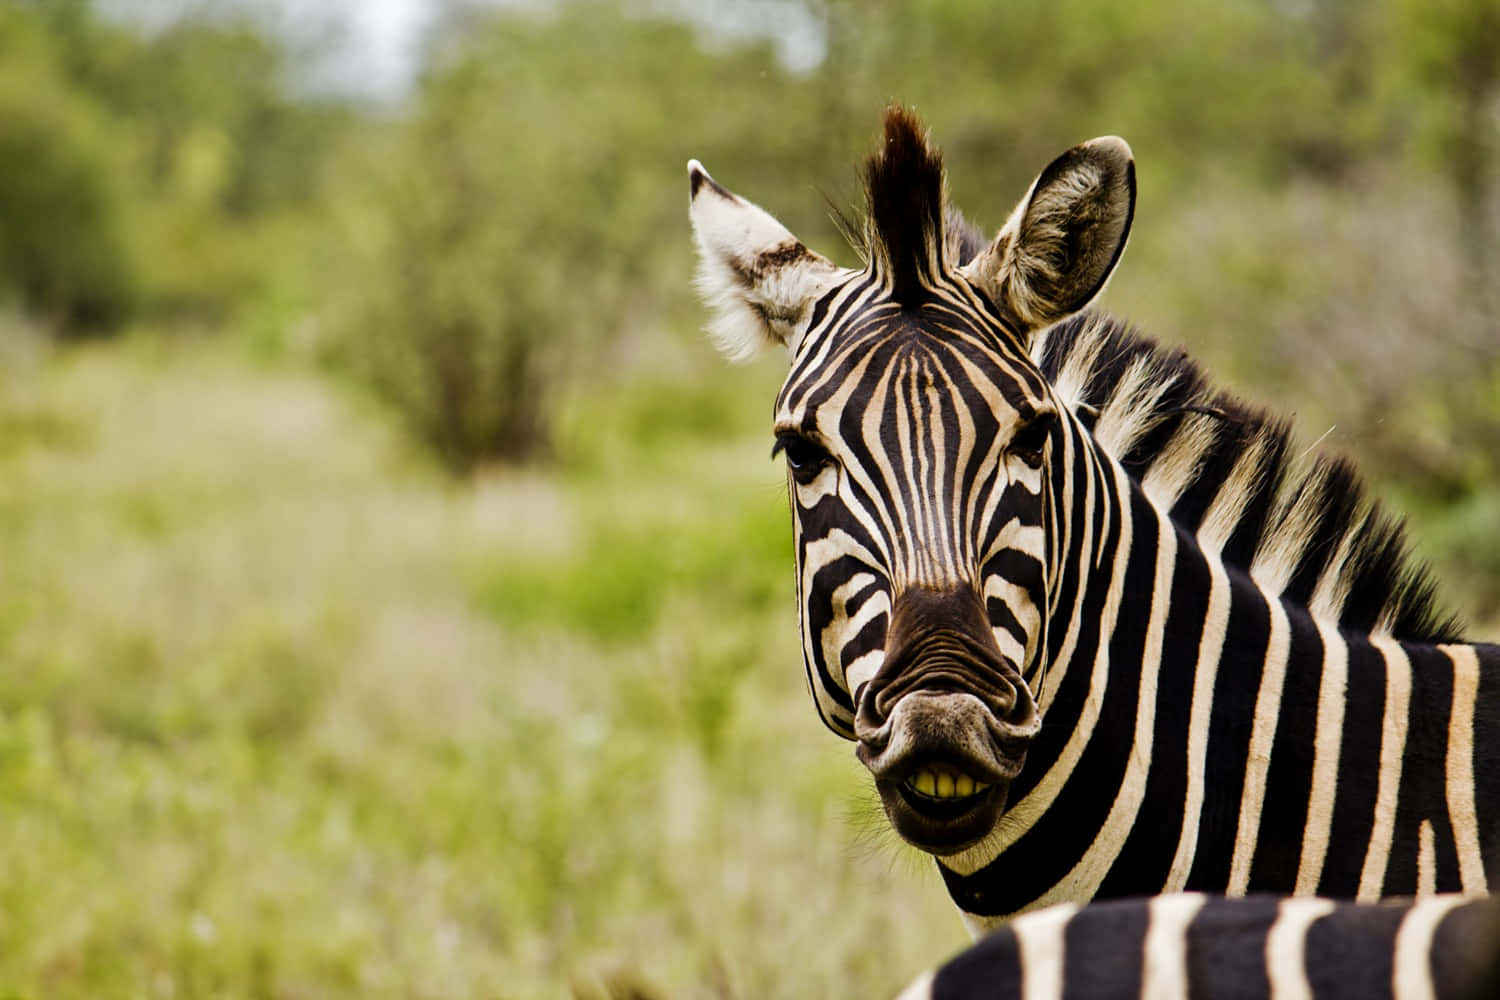 A Zebra Stripe Standing in a Field of Grass